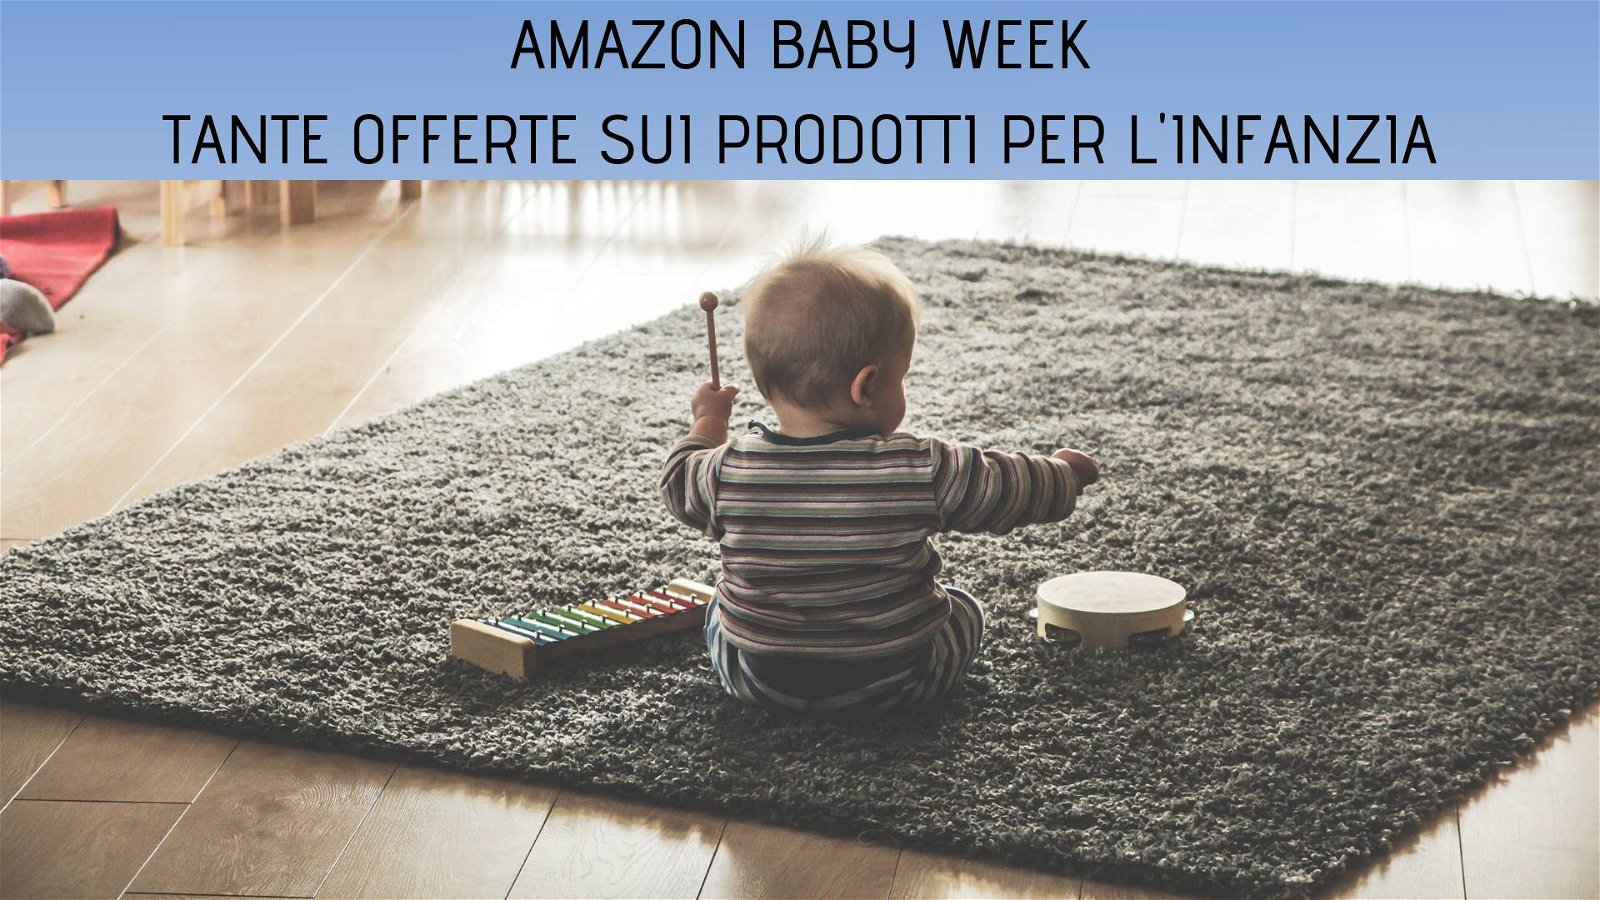 Immagine di [ULTIMI GIORNI] Amazon BabyWeek: una settimana di offerte su passeggini, seggiolini e prodotti per la prima infanzia